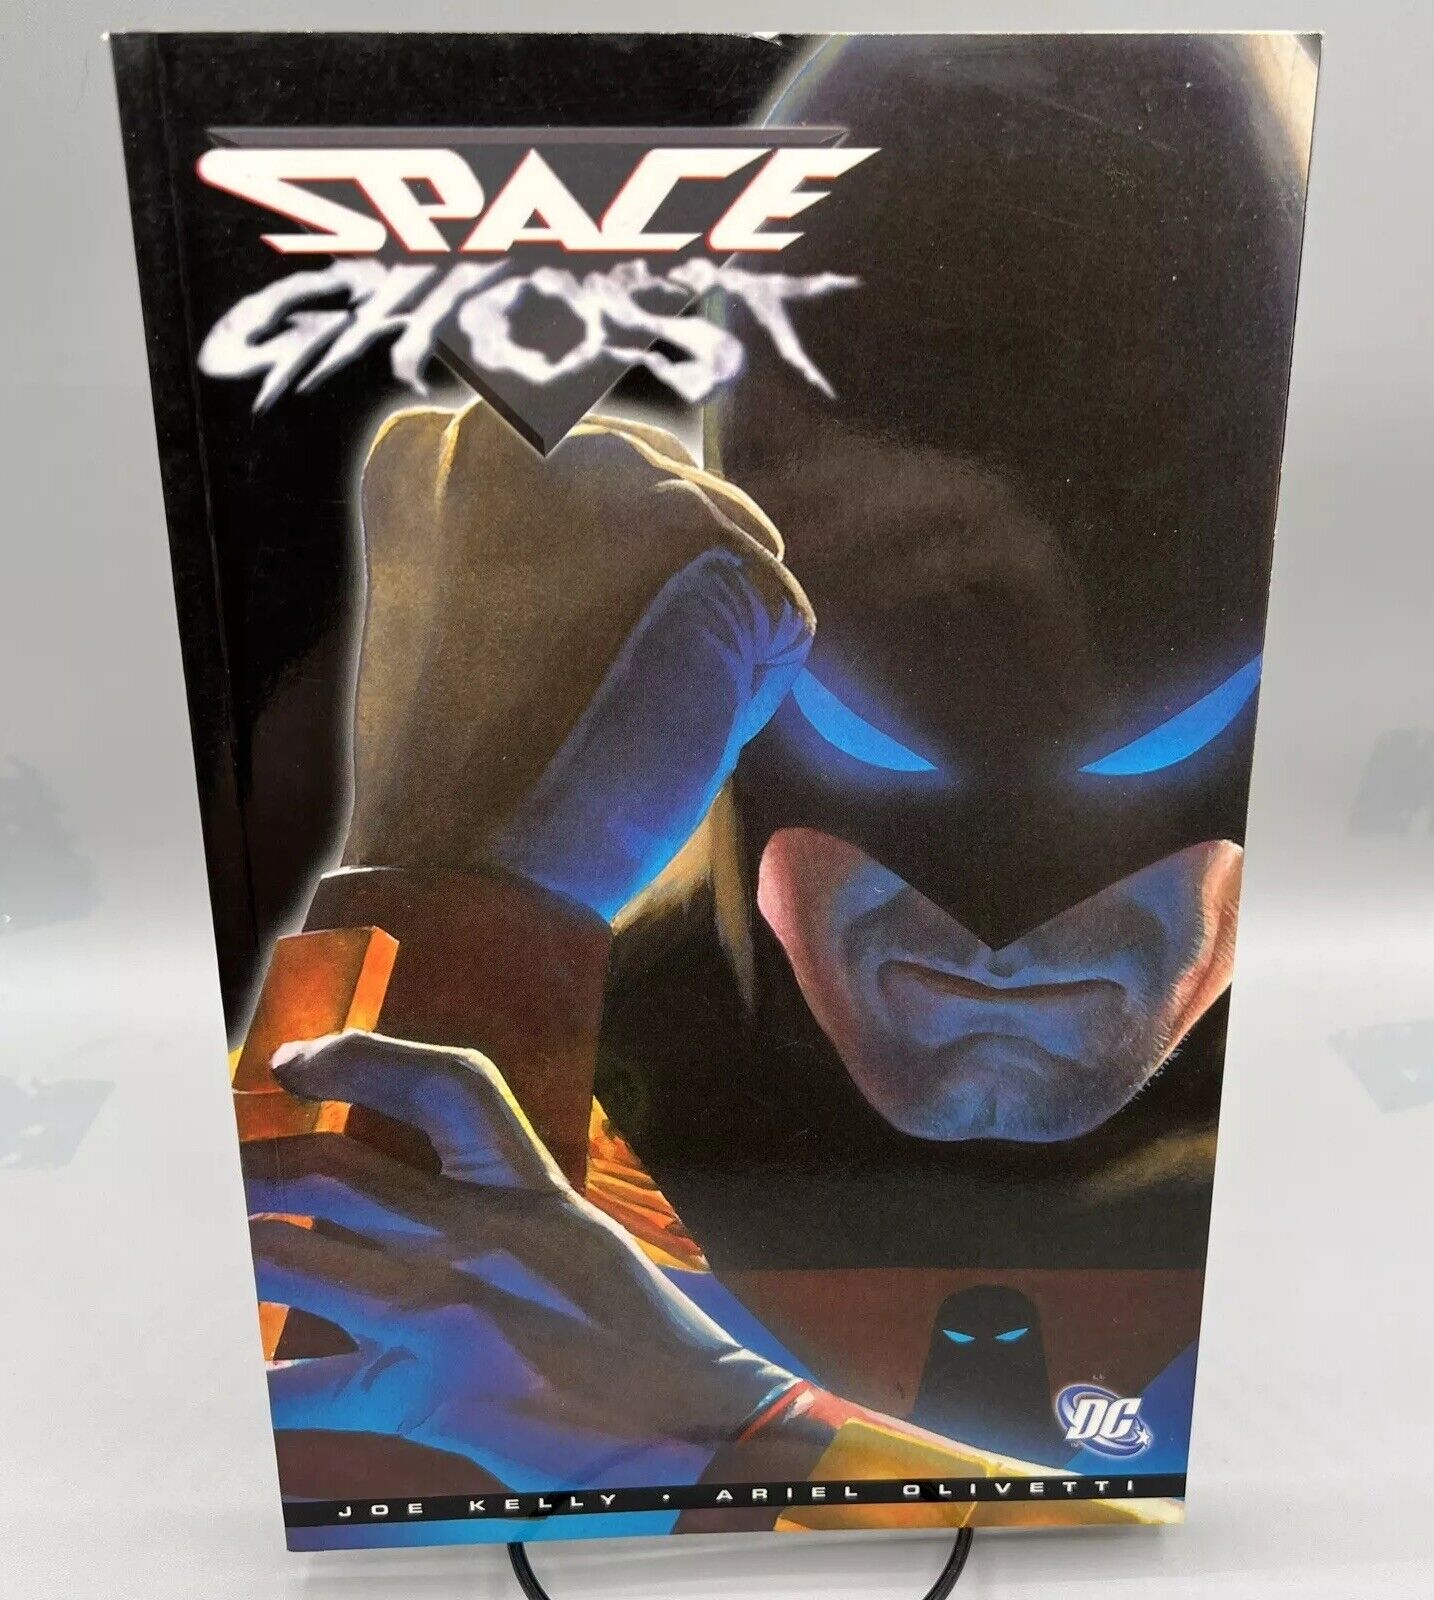 Space Ghost (DC Comics, Trade Paperback, September 2005) OOP Joe Kelly